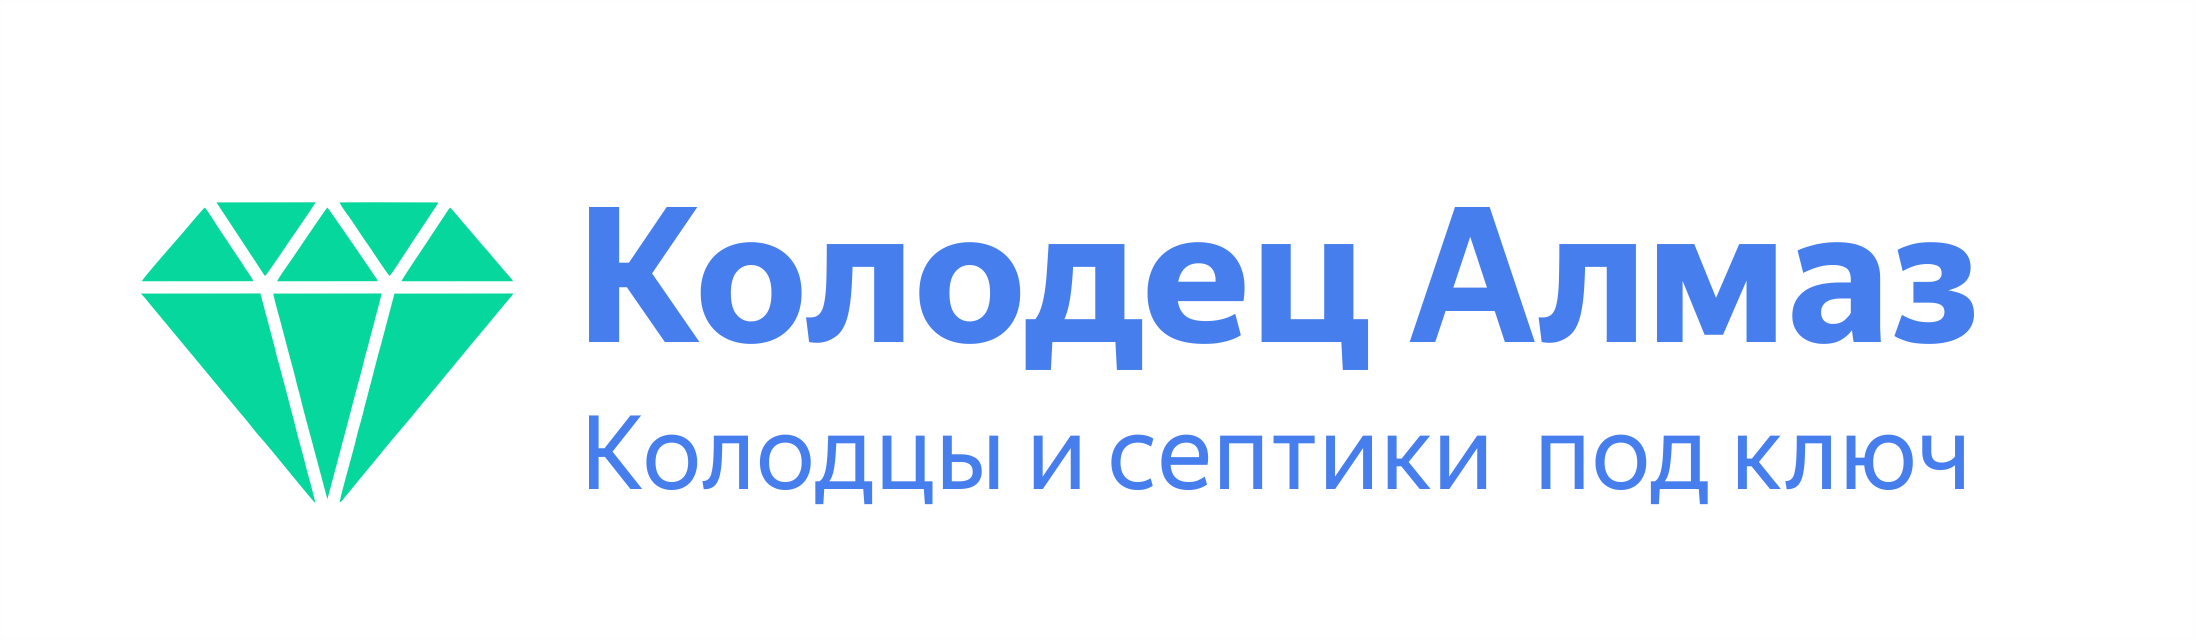 Лого подвал